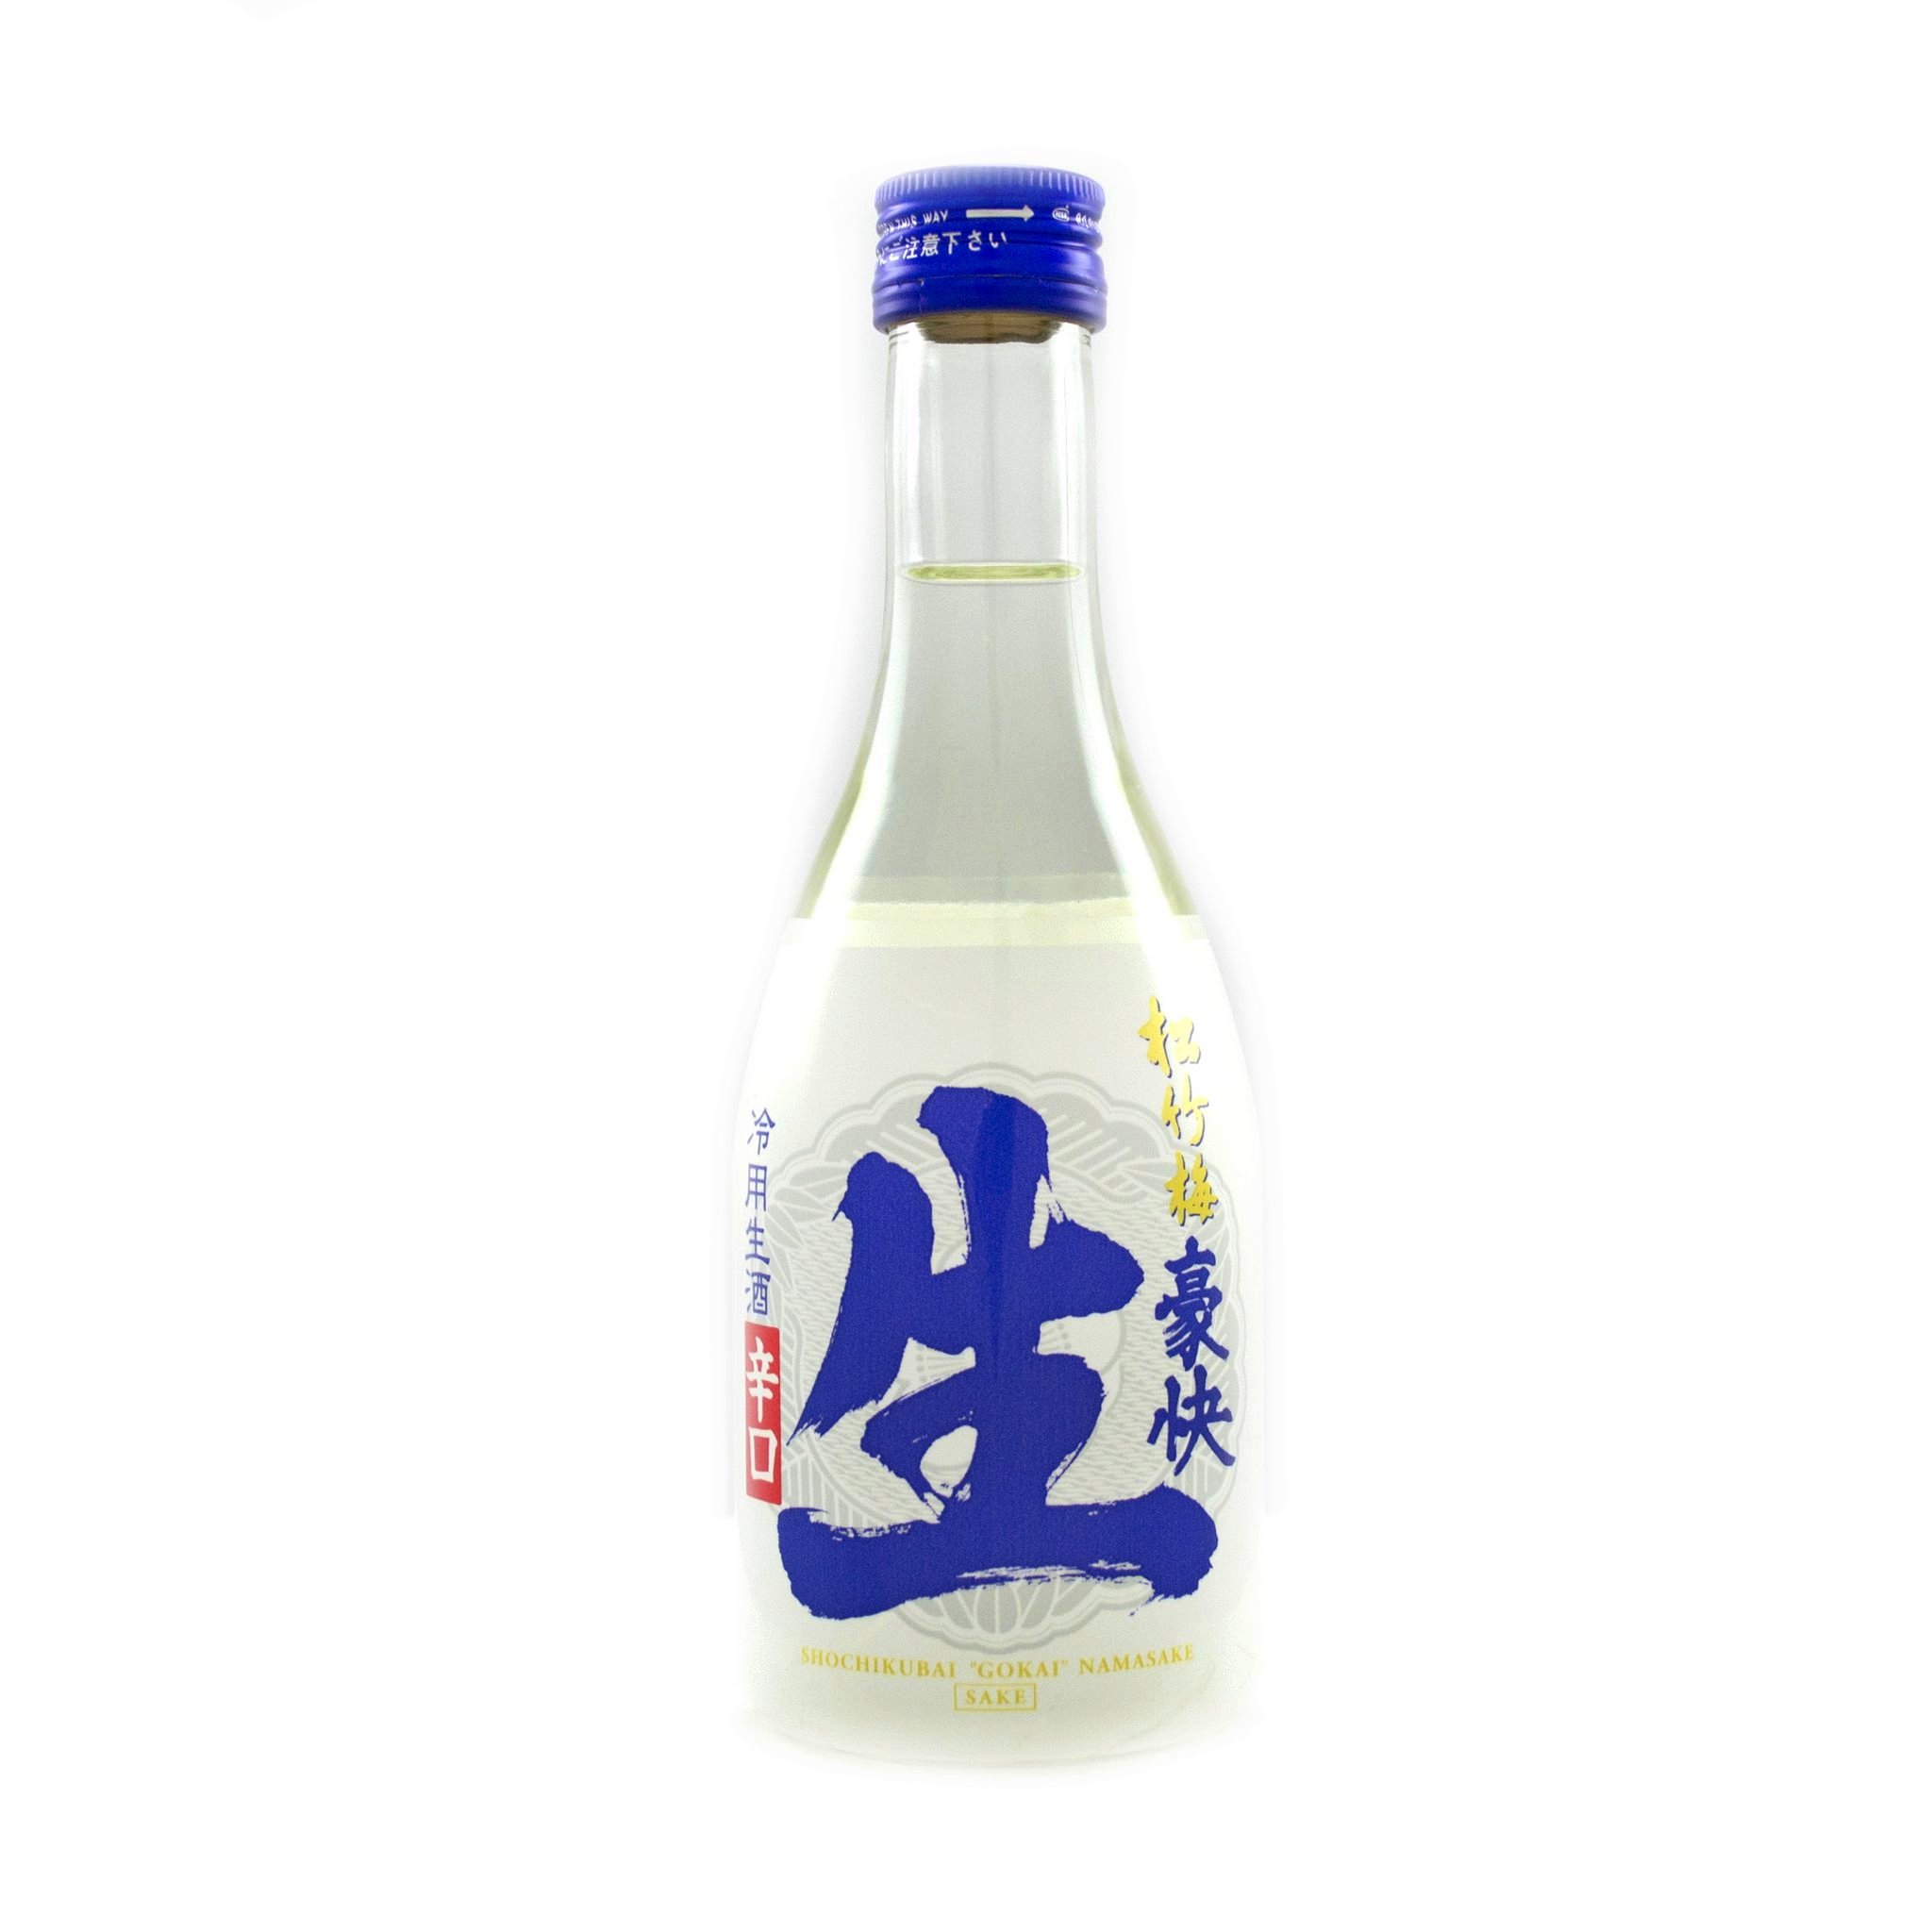 Shochikubai Gokai Nama Sake 300ml 13-14%